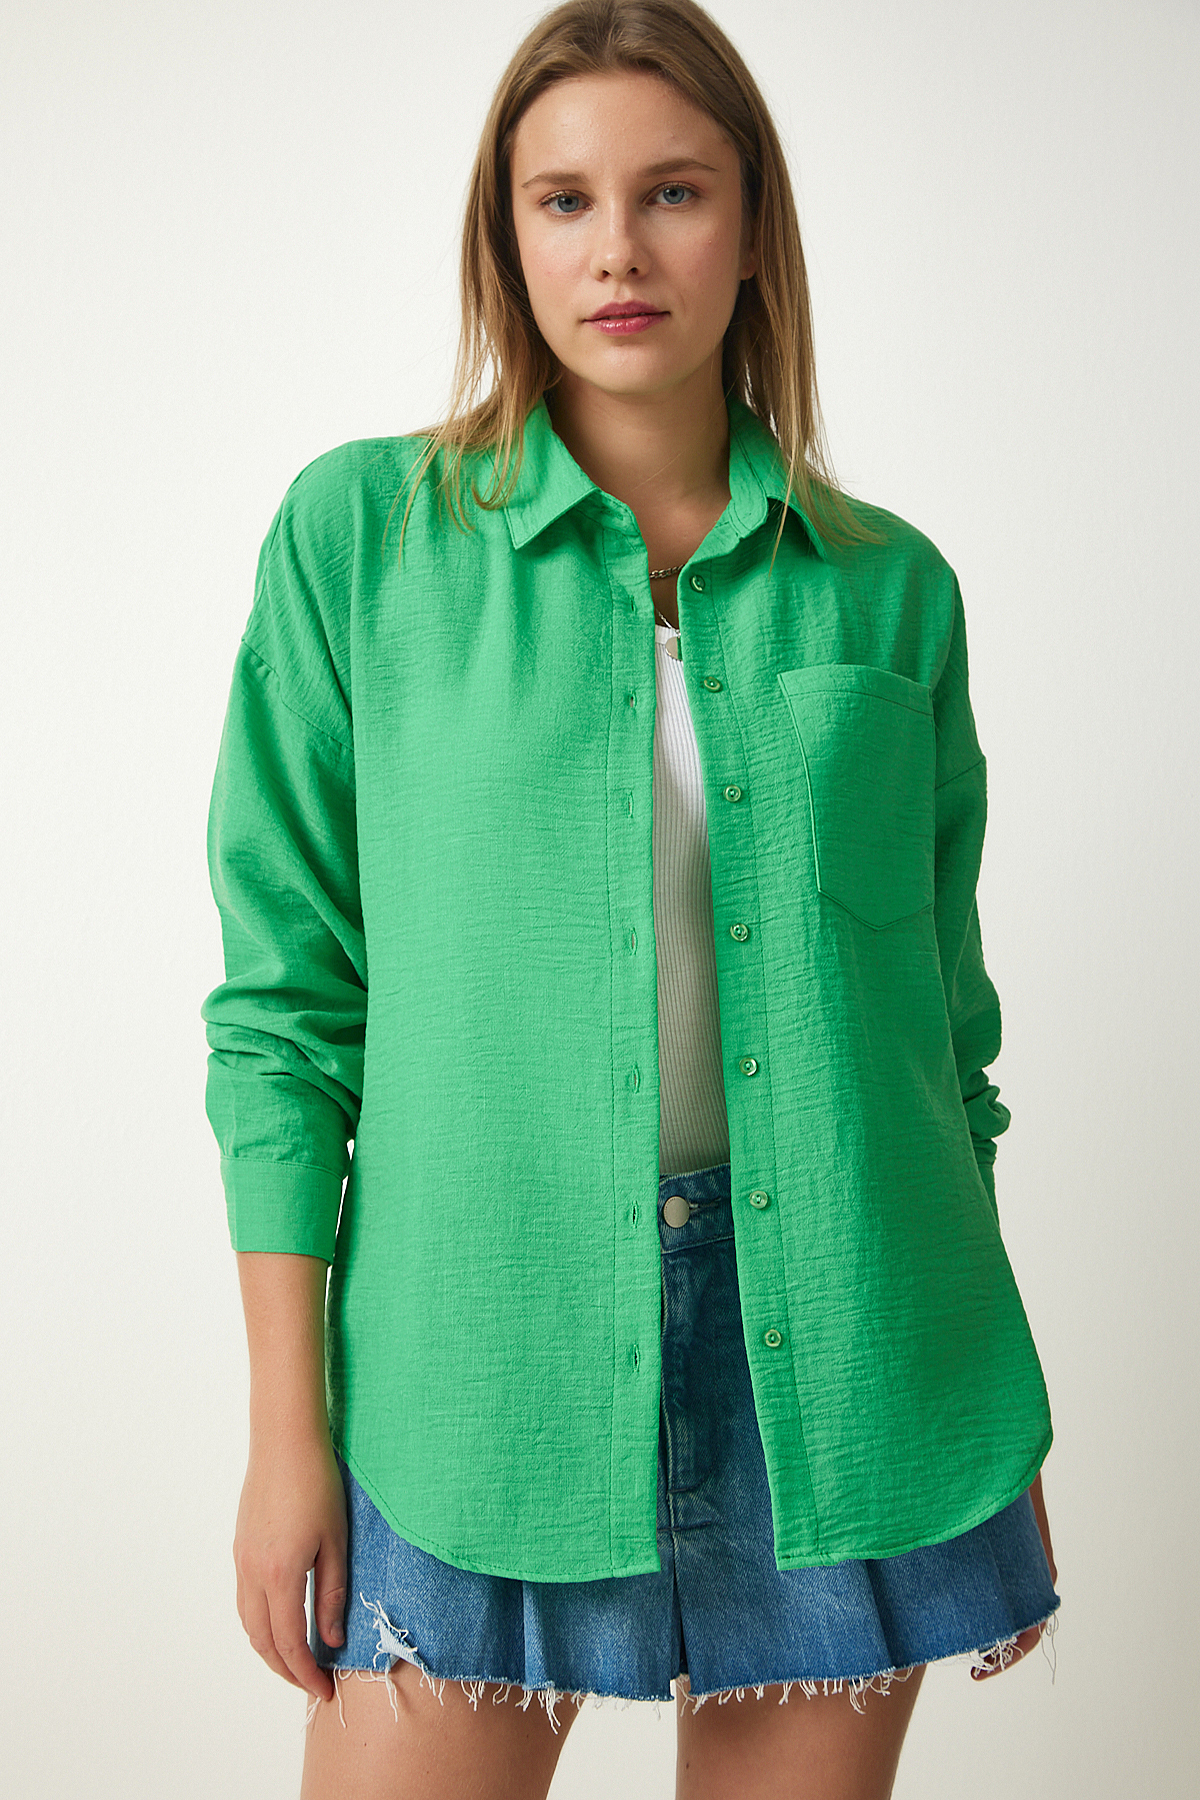 Женская зеленая льняная рубашка оверсайз Airobin Happiness Istanbul, зеленый рубашка летняя льняная женская оверсайз белая elin vuar